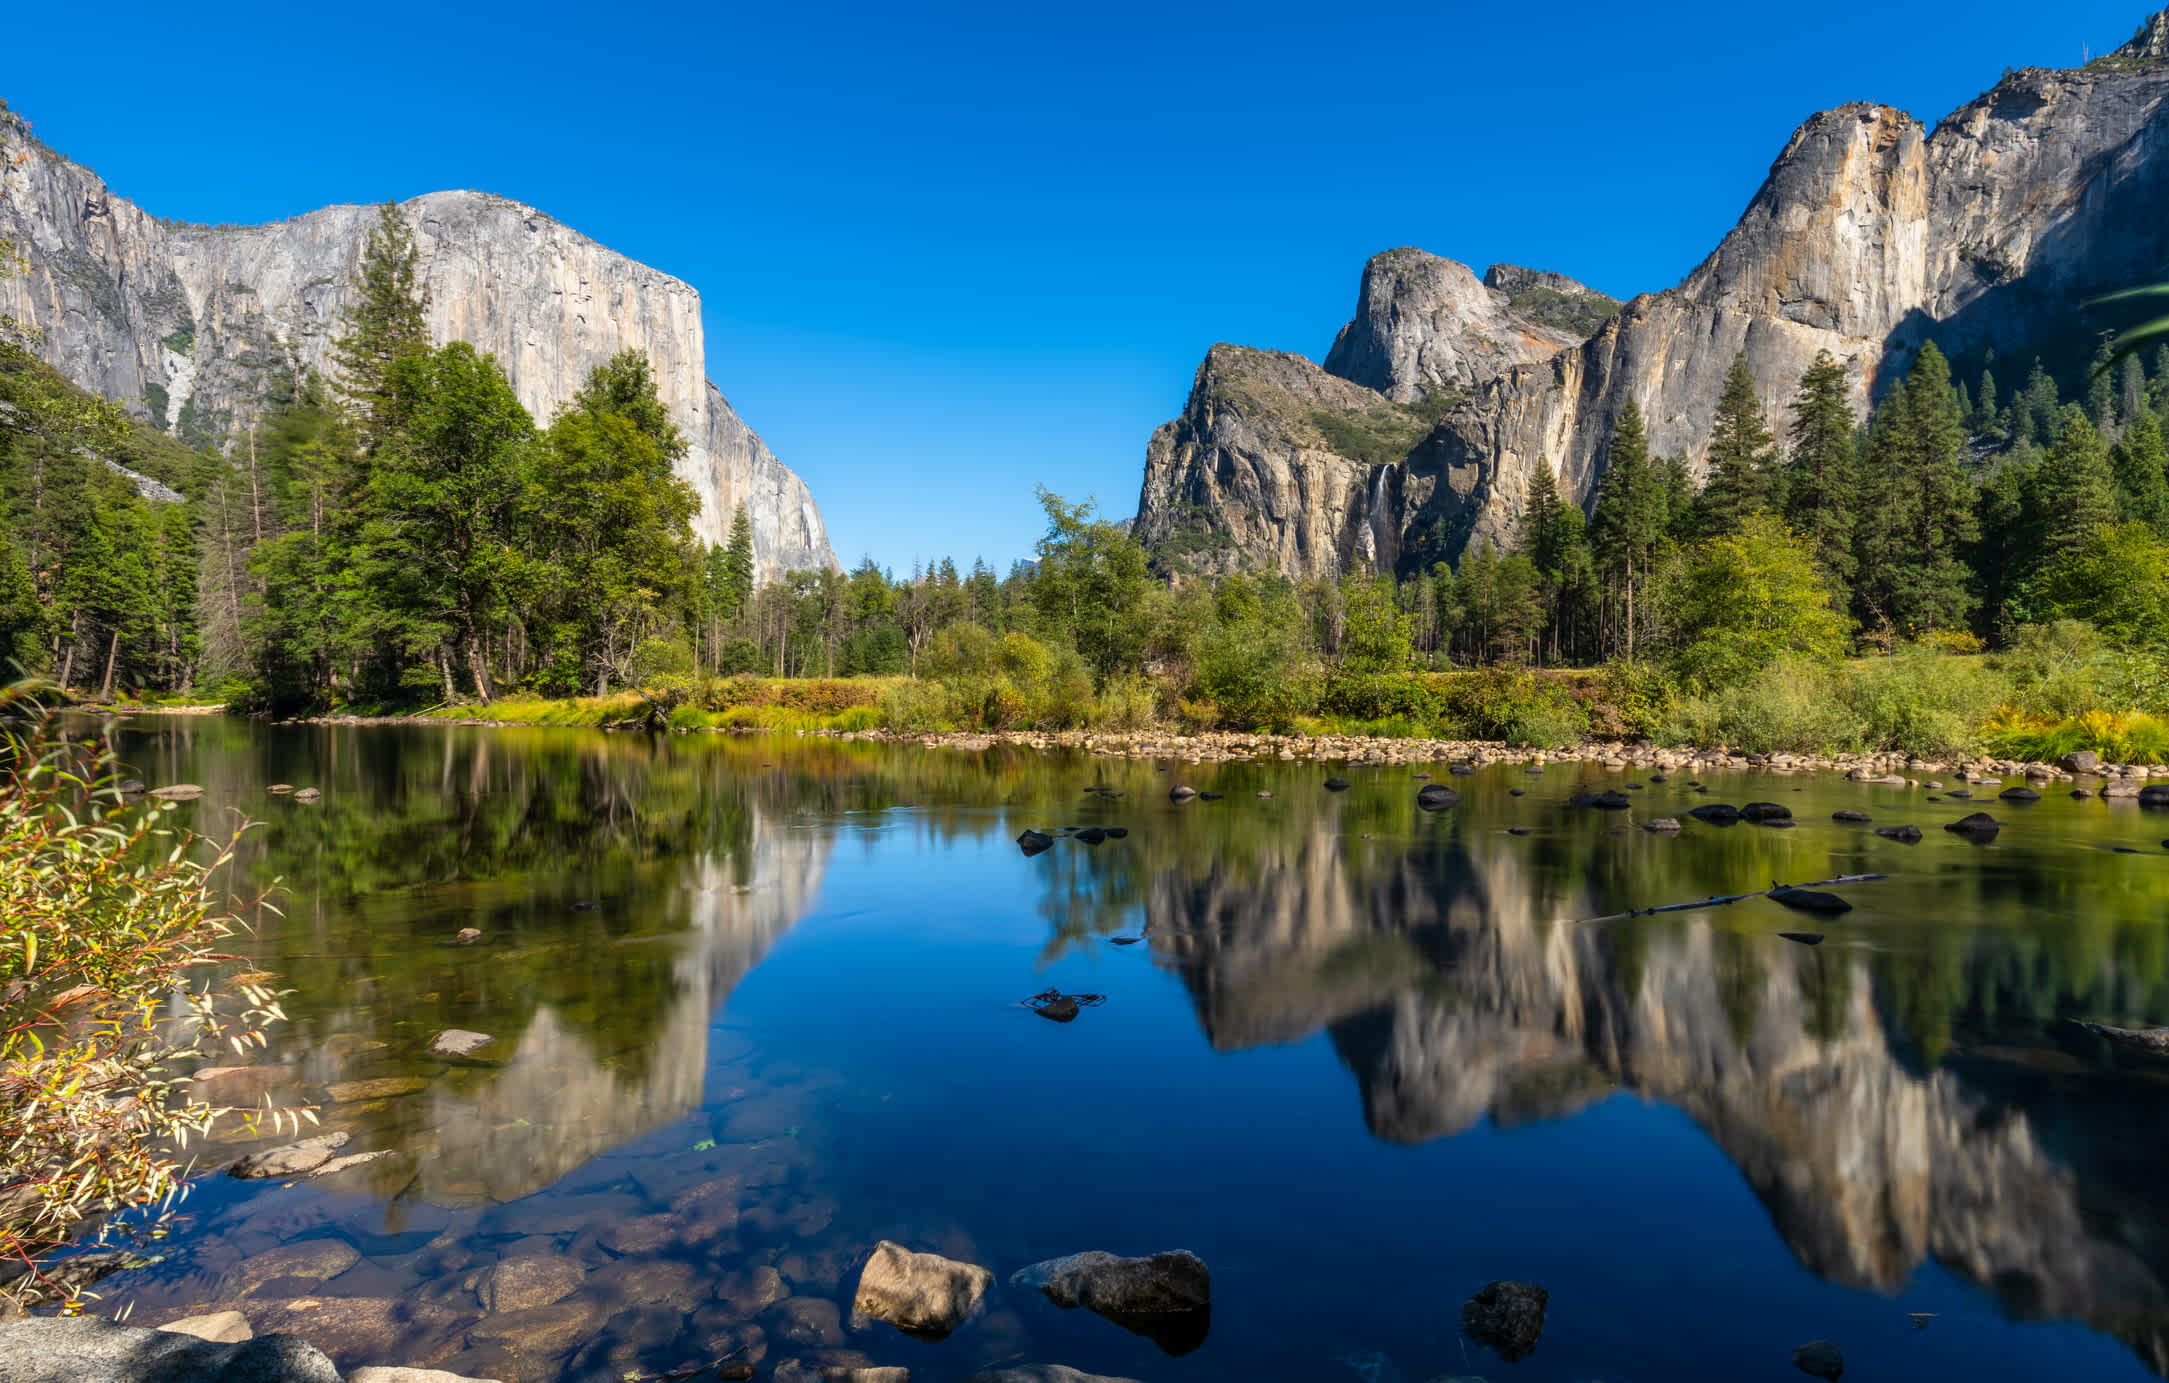 Découvrez l'un des plus célèbres parcs des États-Unis de l'ouest américain, en visitant le parc national de Yosemite lors de votre road trip en Californie.